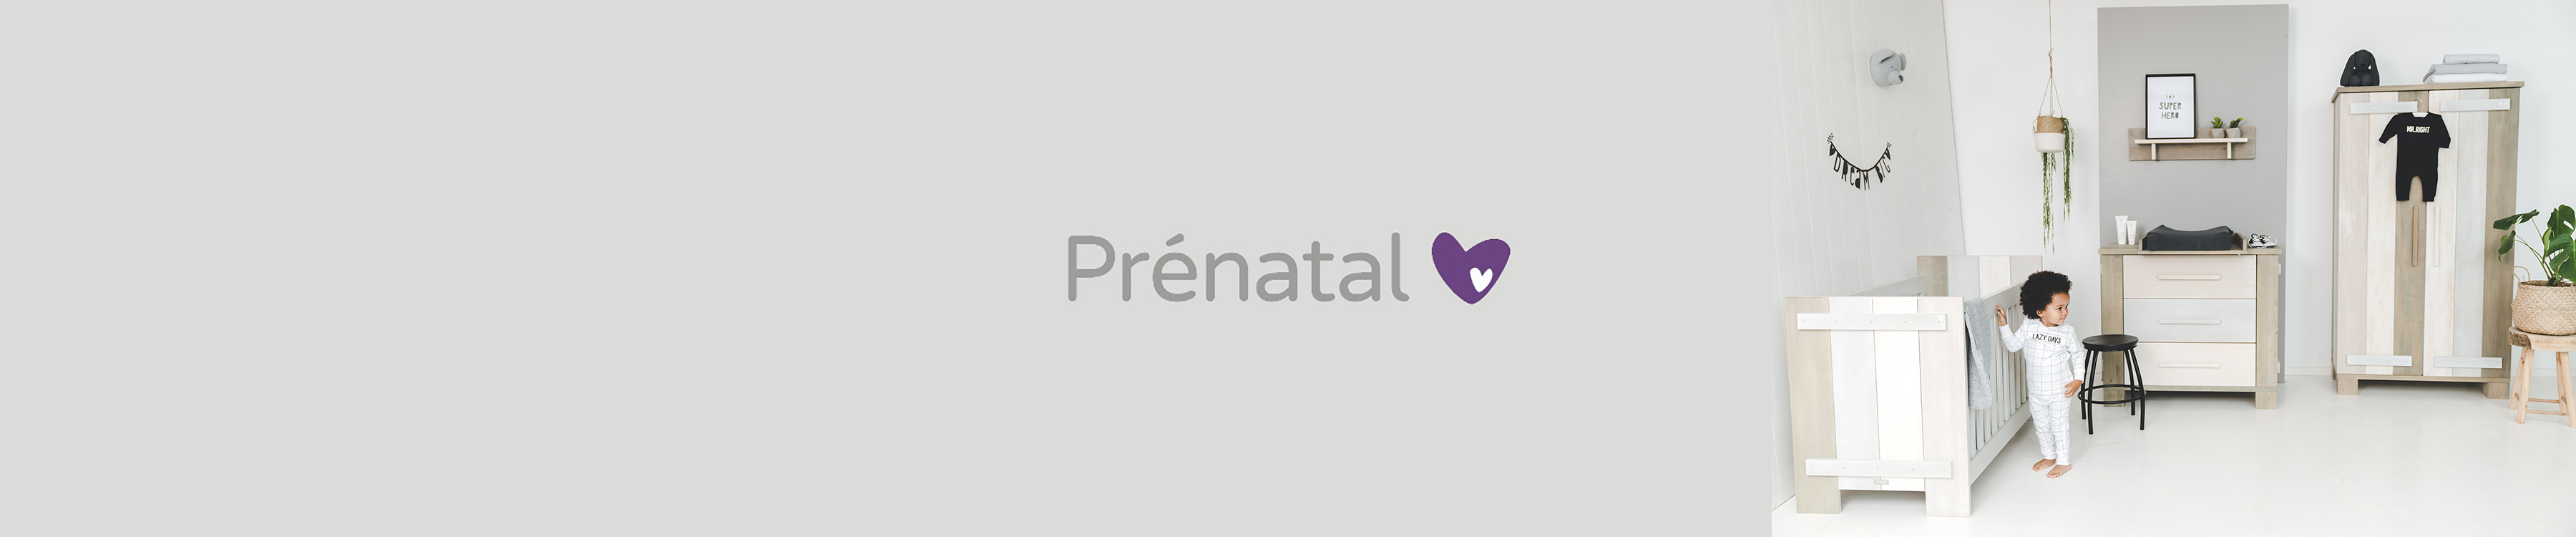 prénatal